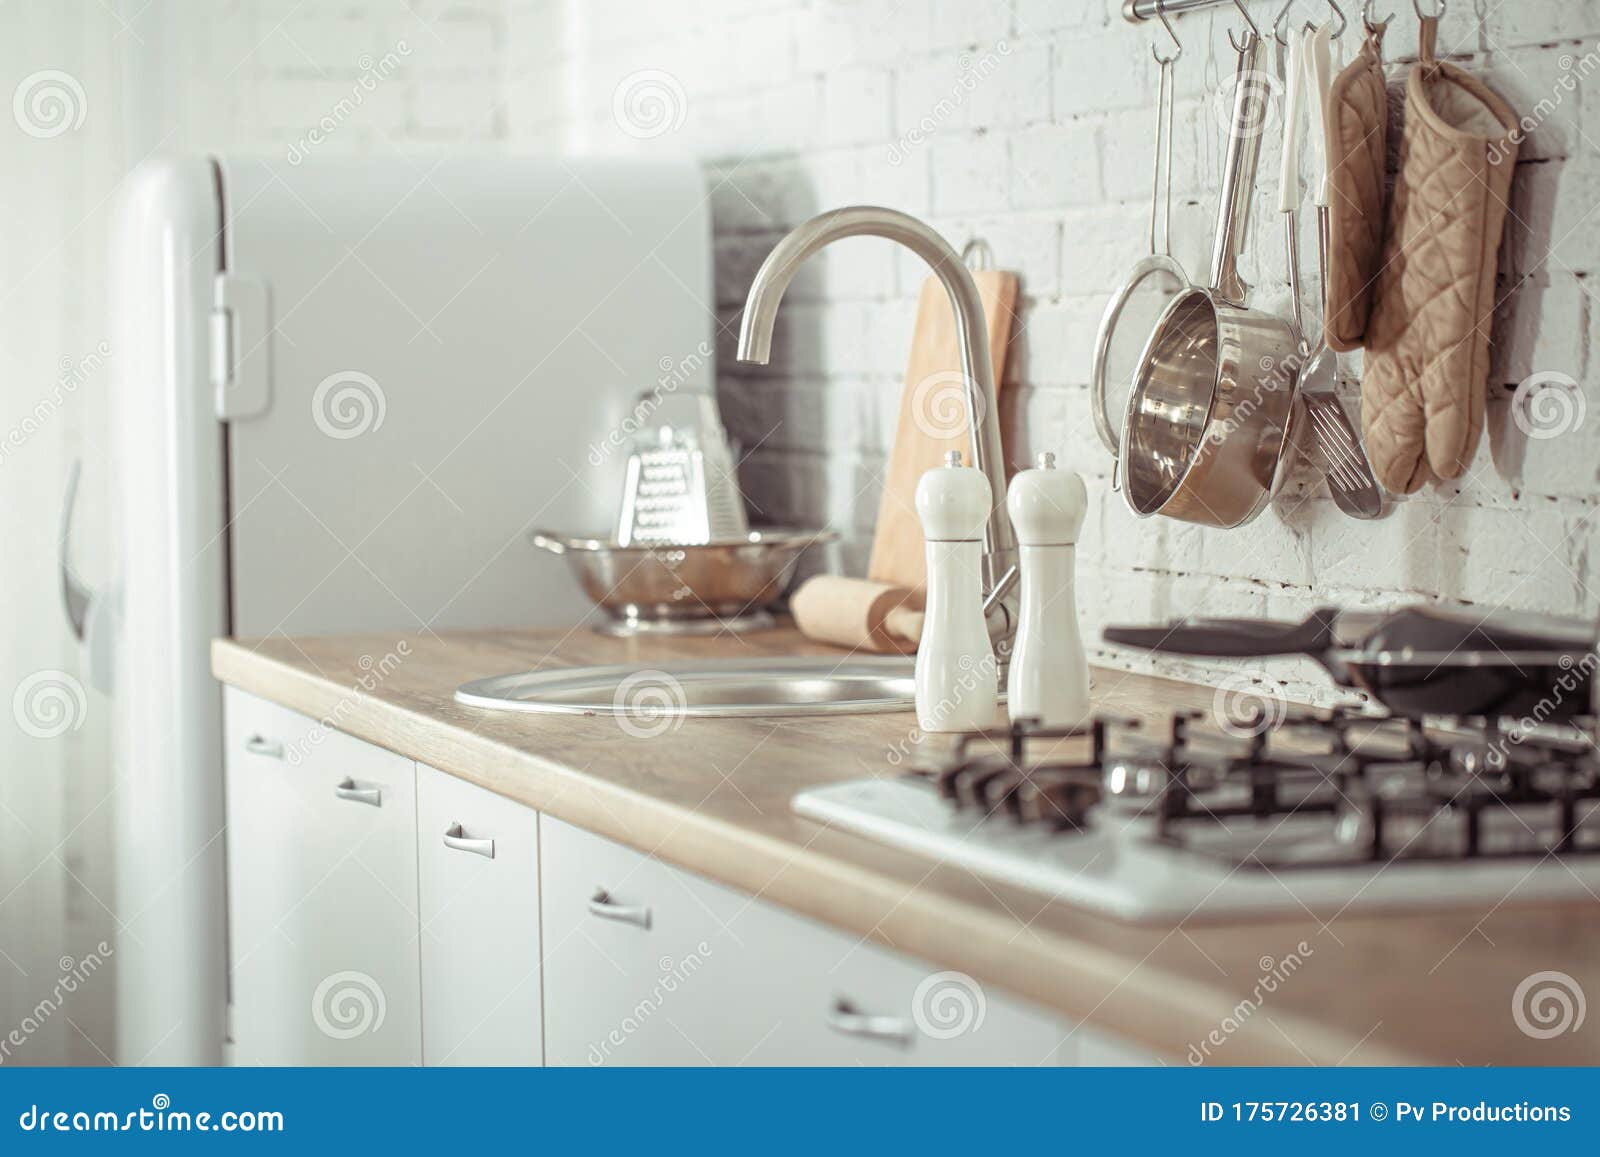 Modern Stylish Scandinavian Kitchen Interior With Kitchen